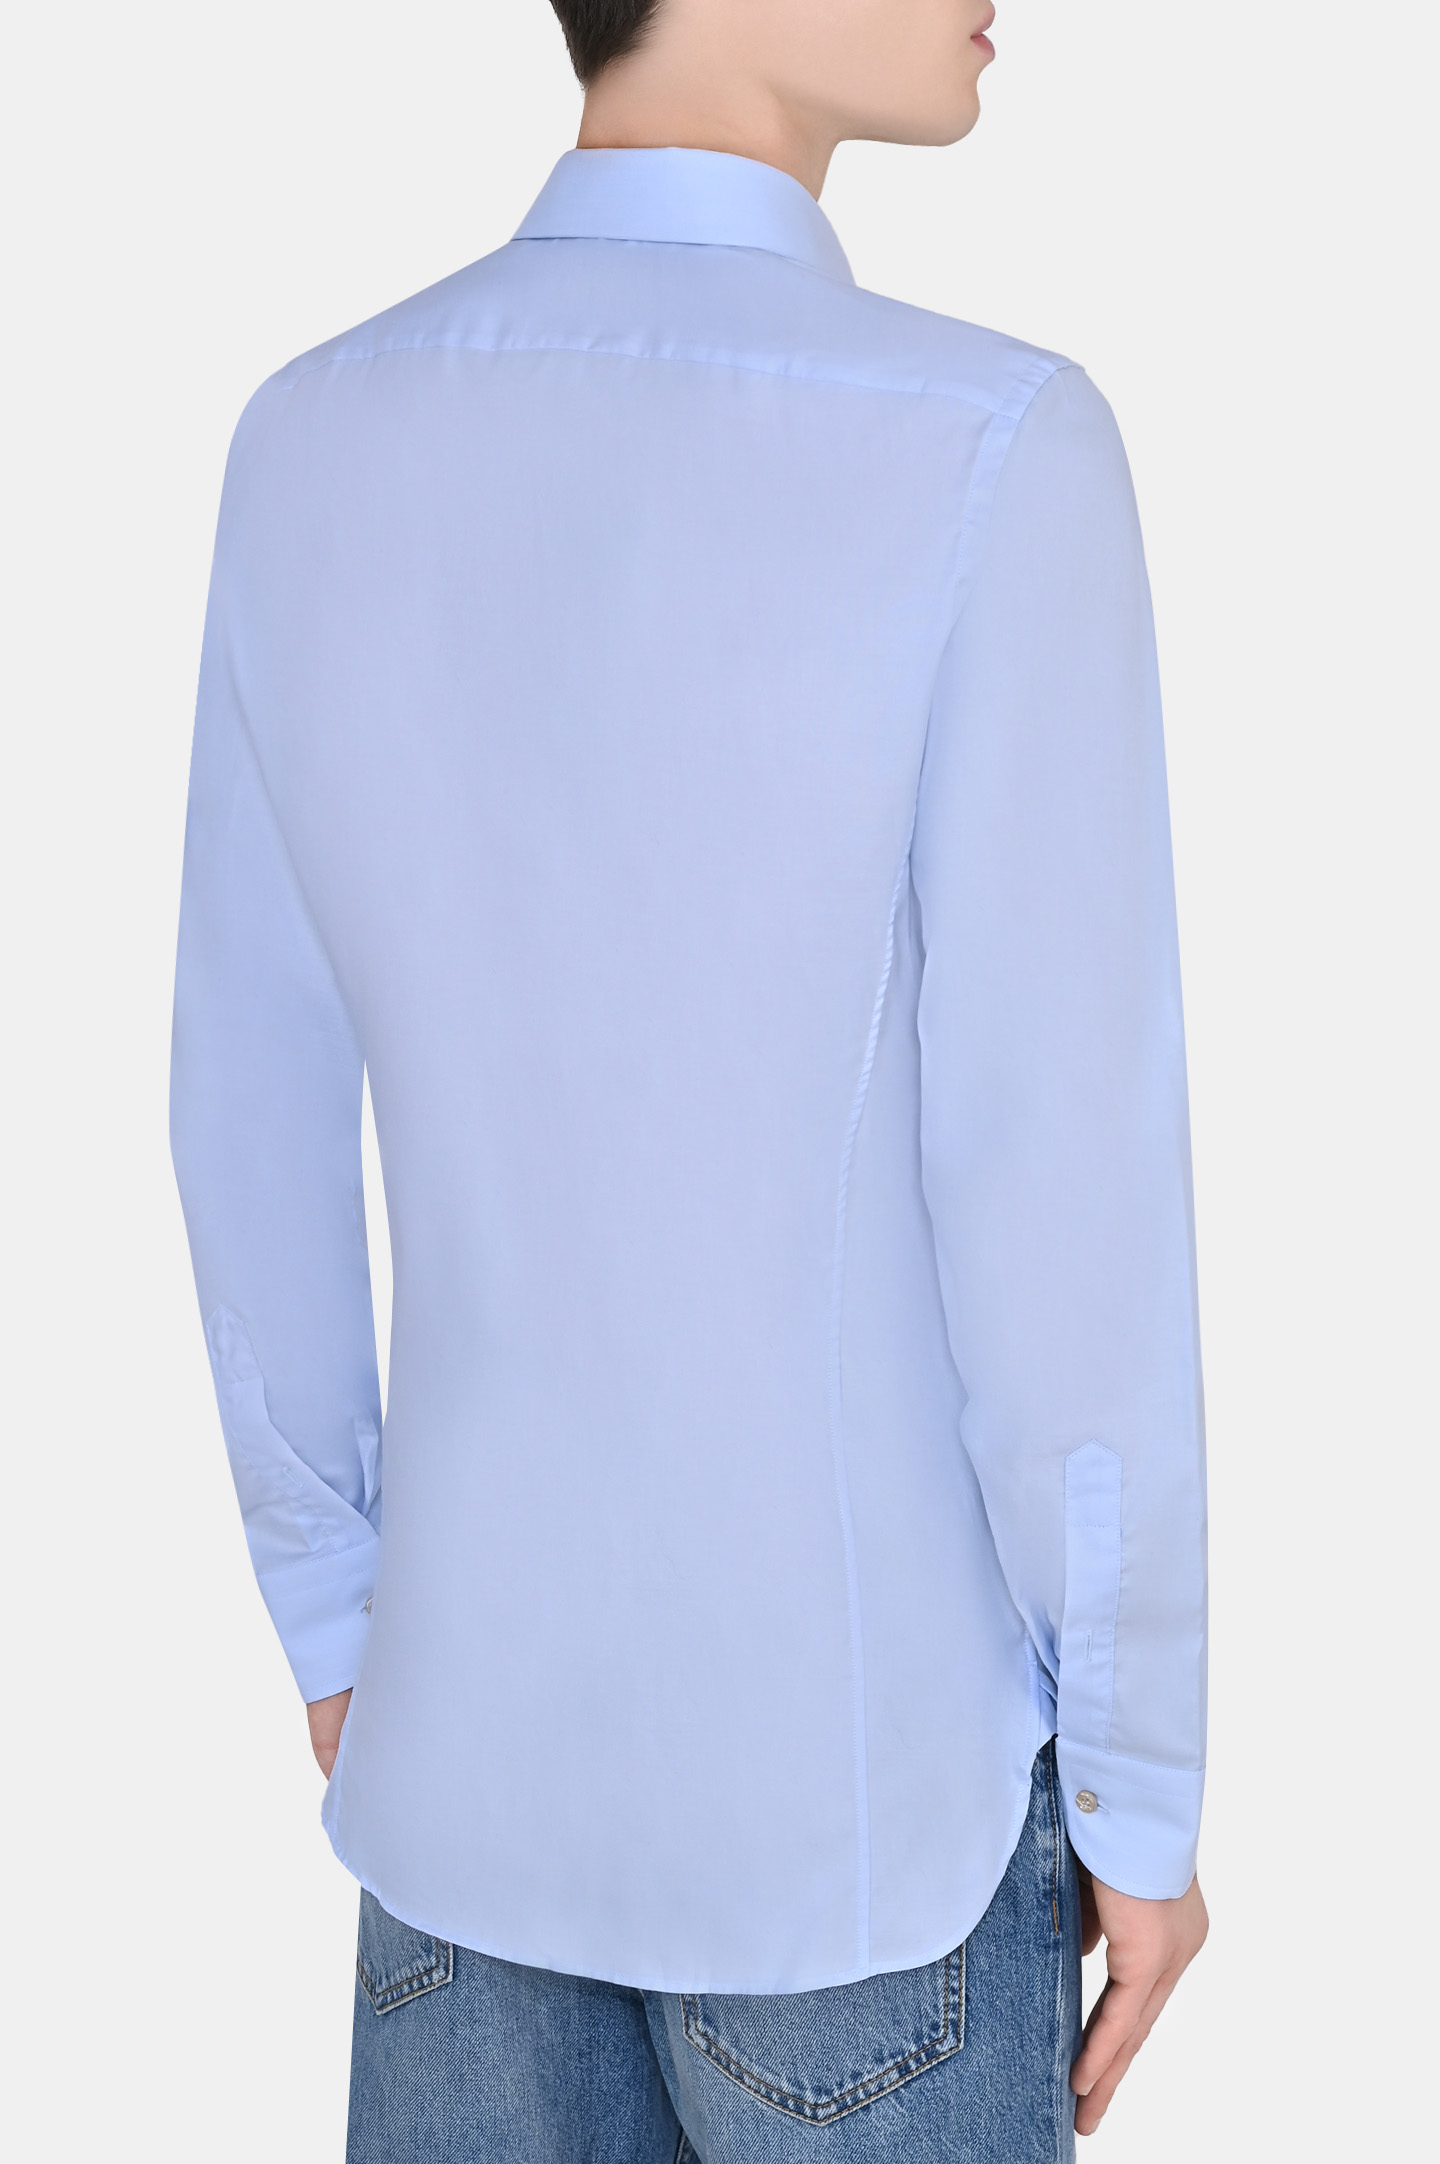 Рубашка GUCCI 649696 ZAGIQ, цвет: Голубой, Мужской